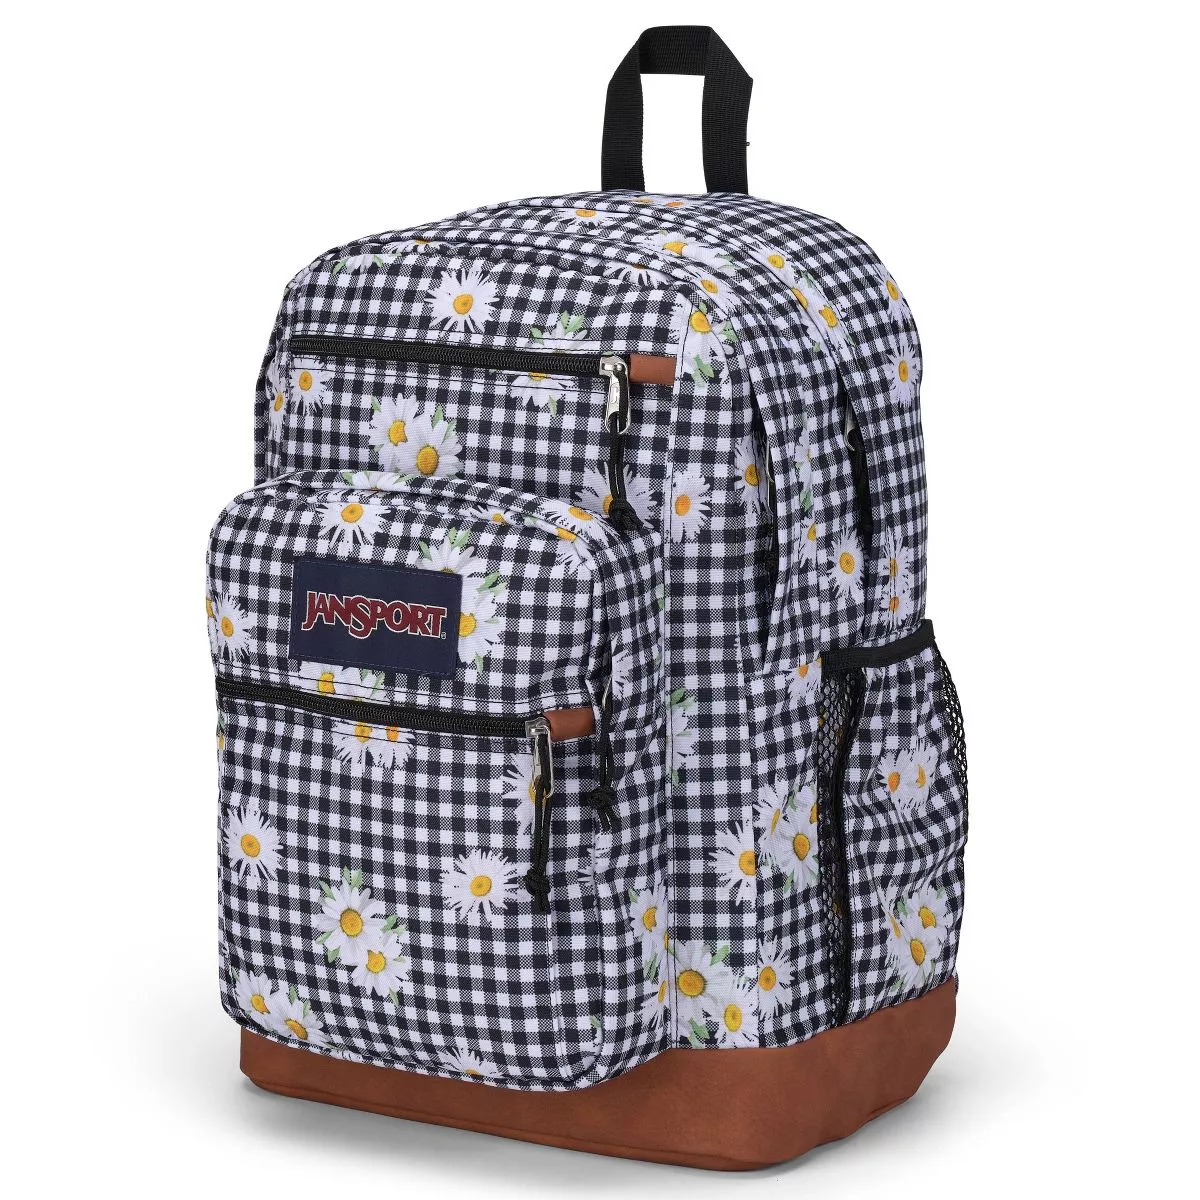 Jansport Big Student 17.5 Backpack - Its Electric : Target